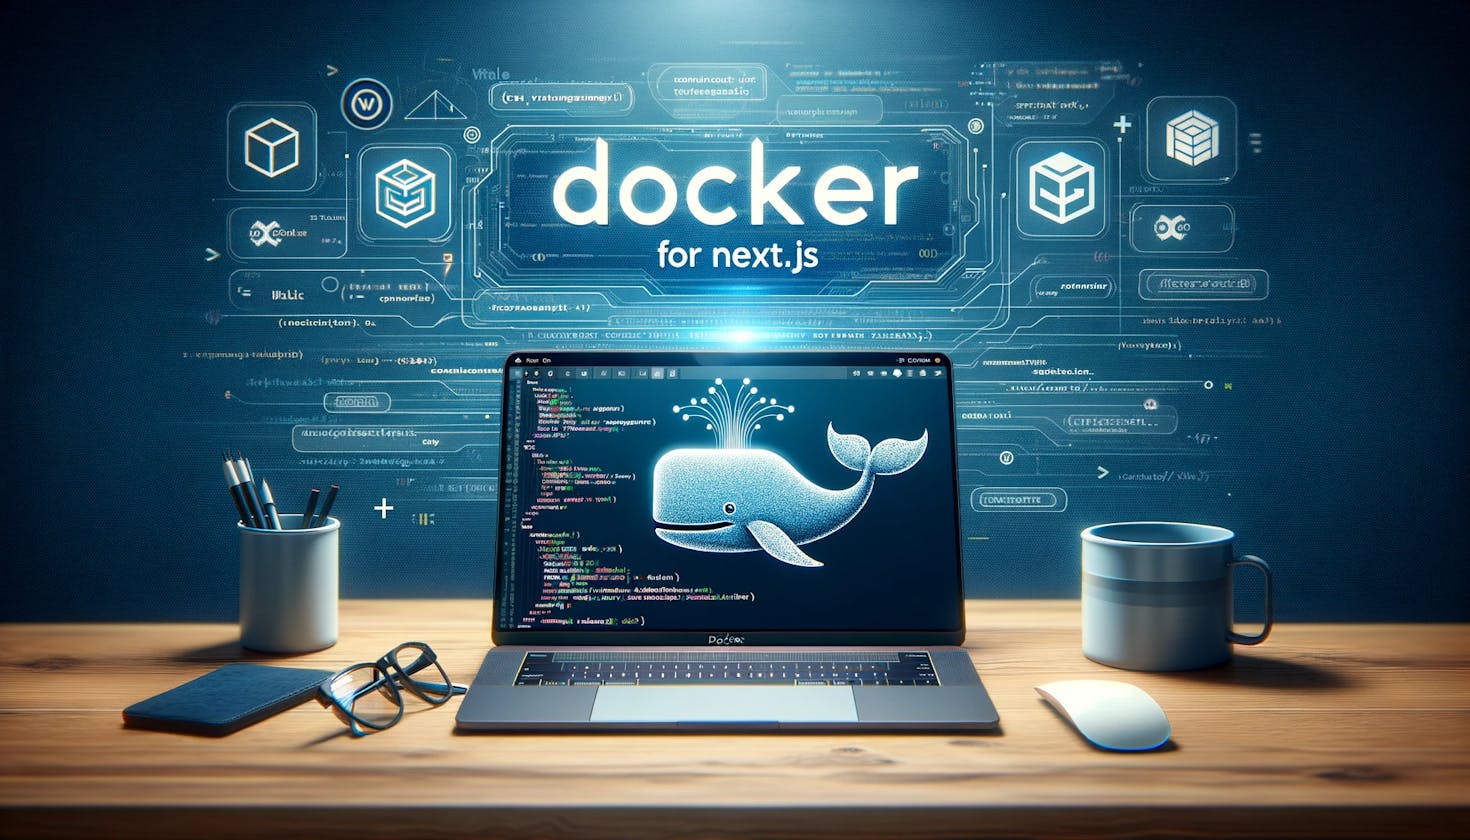 Docker for Next.js